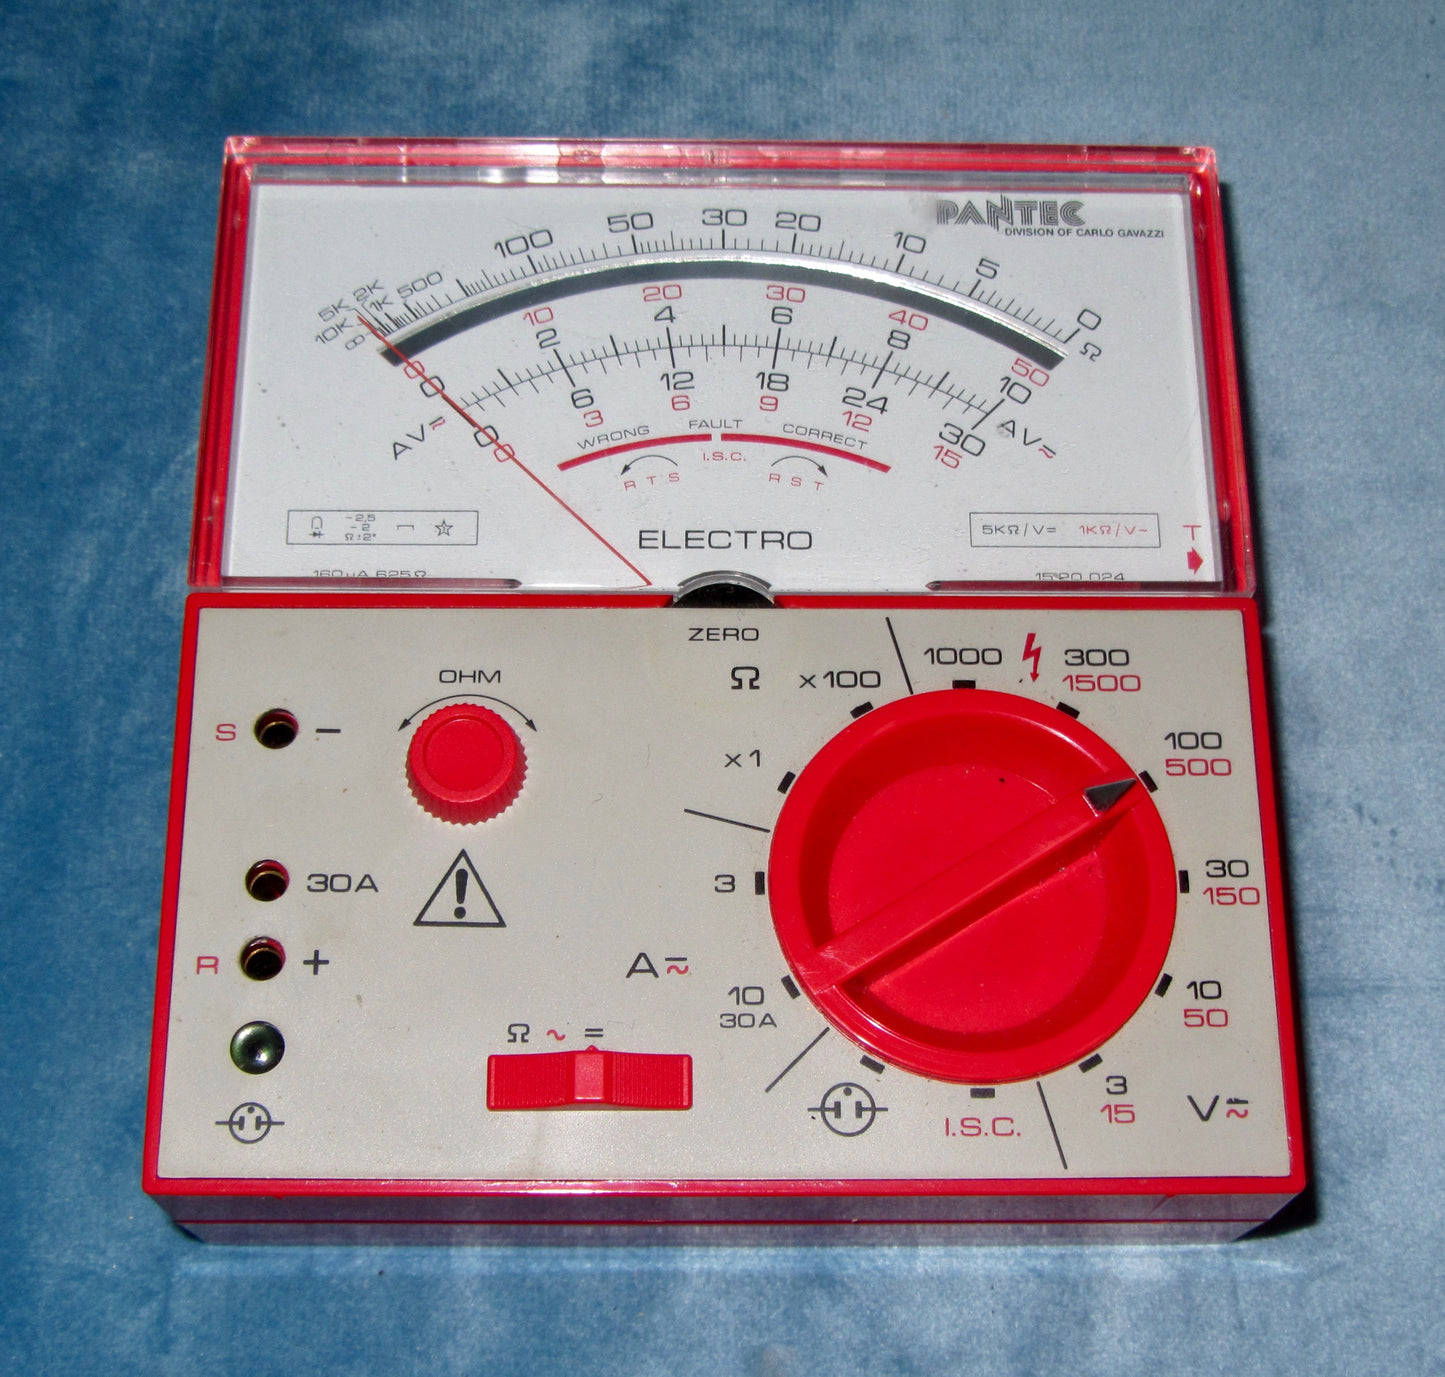 Vintage Pantec Electro Analogue Multimeter